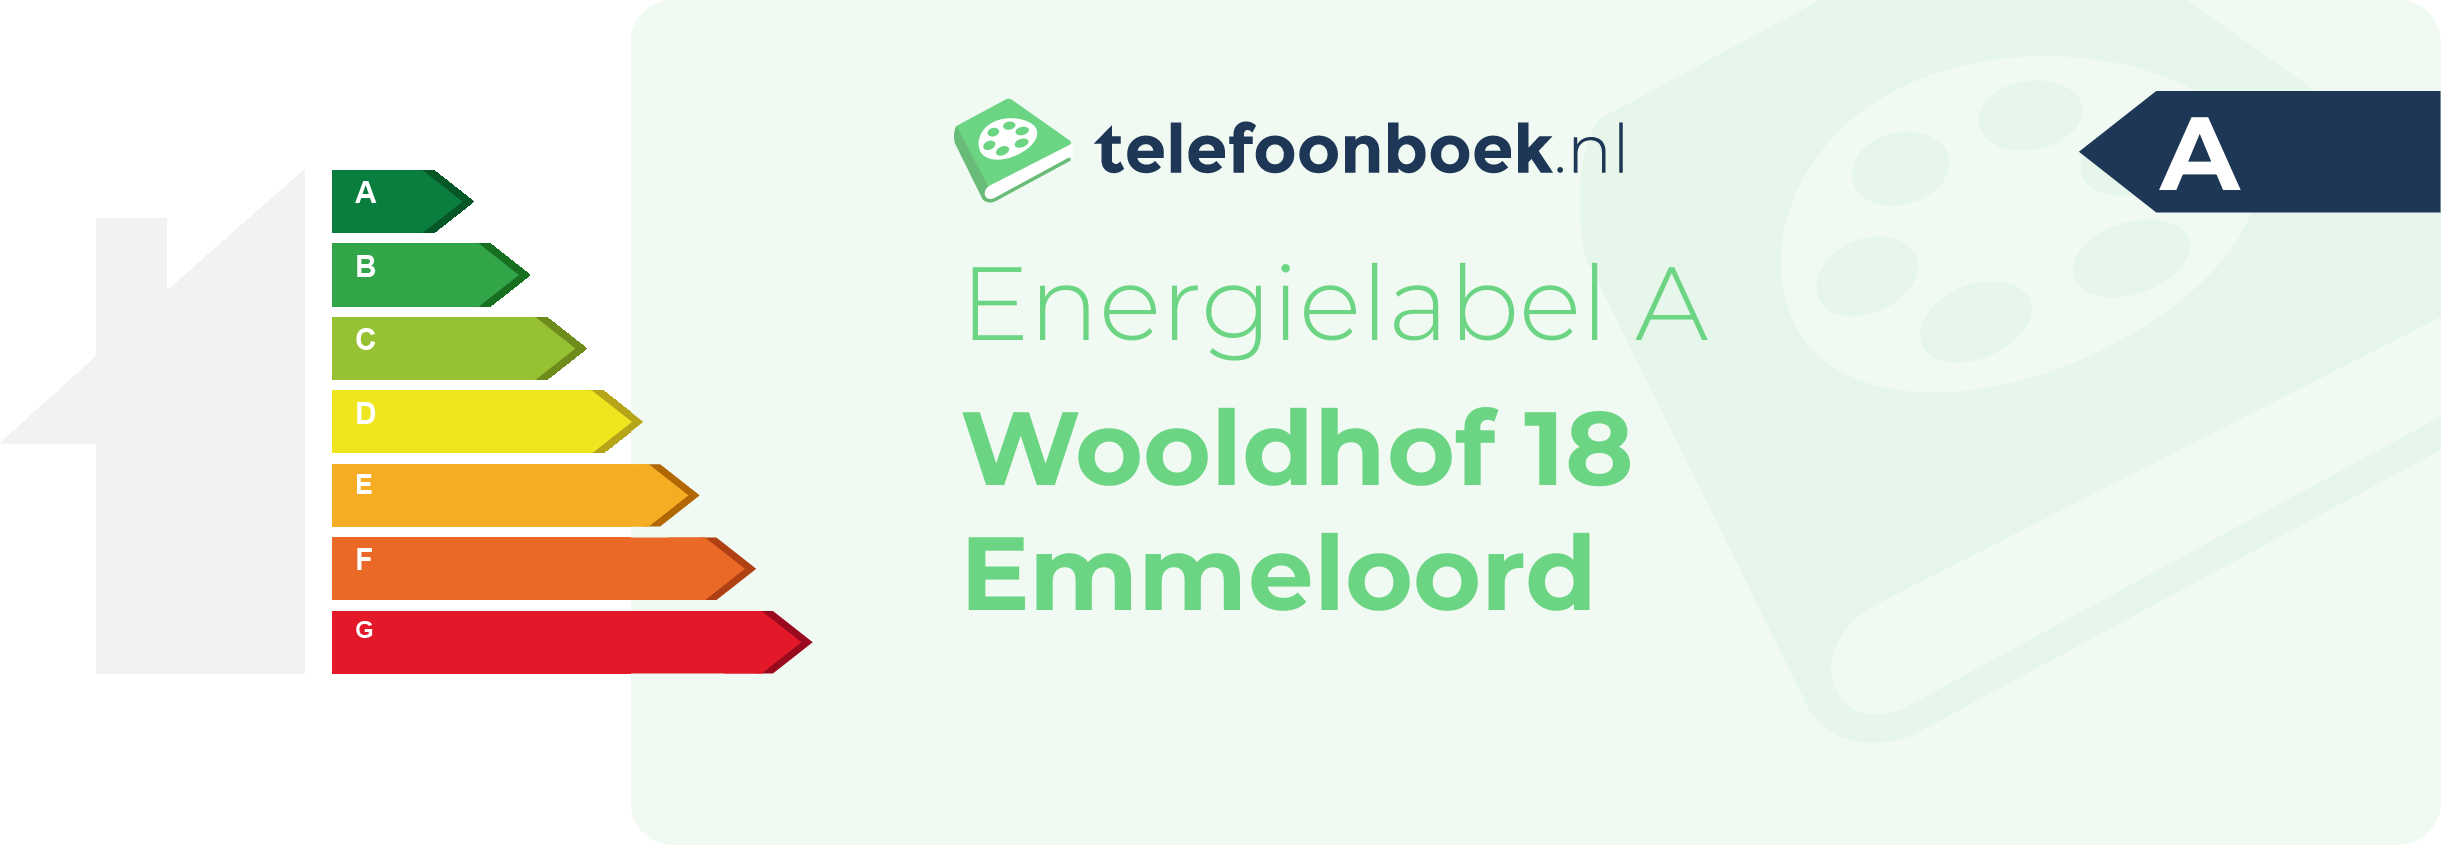 Energielabel Wooldhof 18 Emmeloord